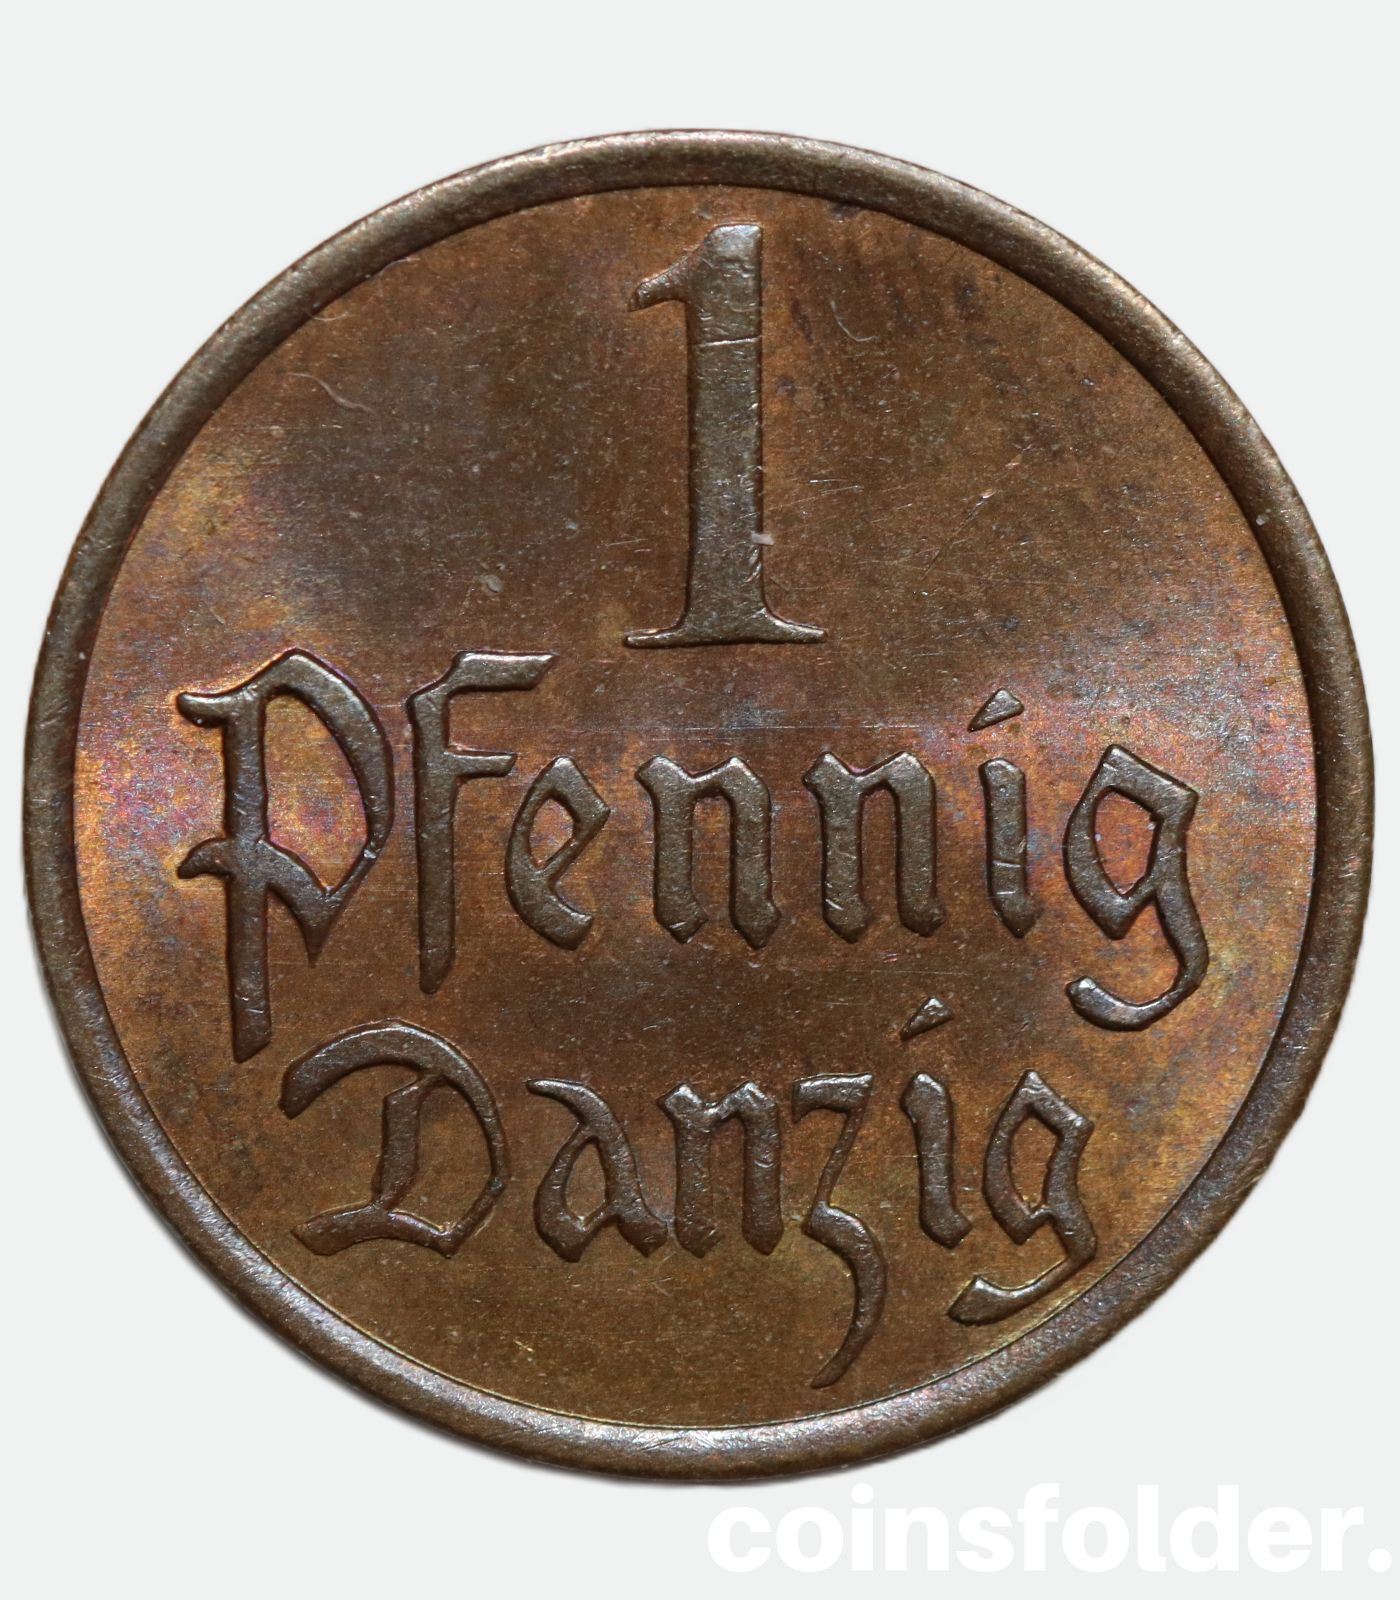 Free City of Danzig - 1 Pfennig, 1937